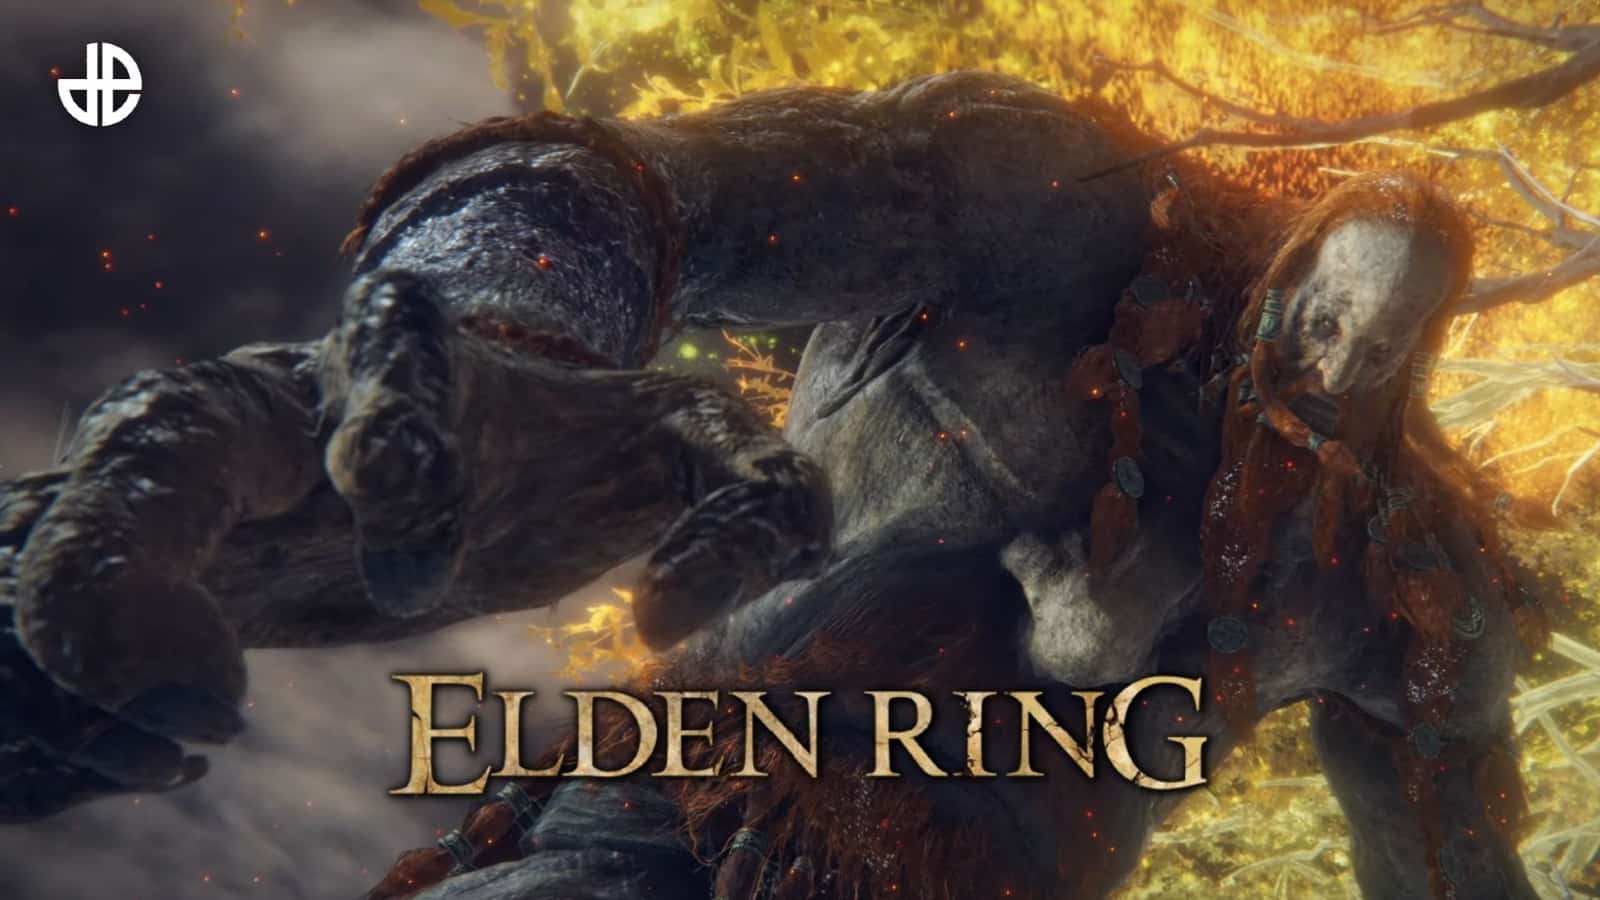 Fire giant in Elden Ring